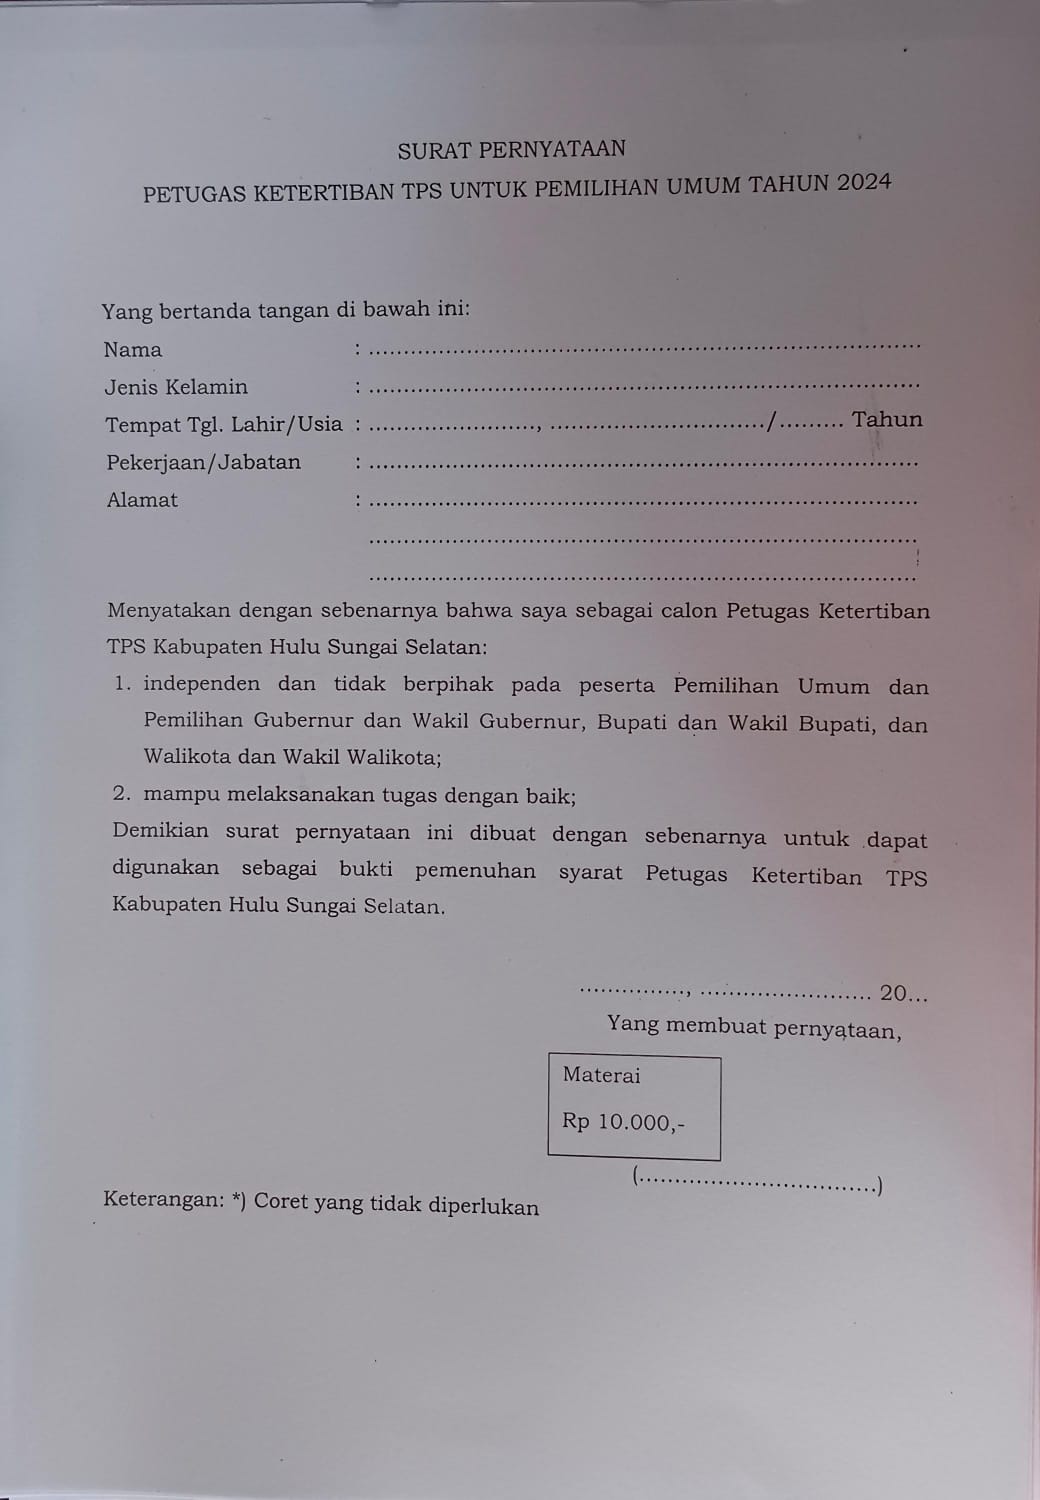 Fotocopy surat pernyataan petugas ketertiban TPS untuk pemilihan umum tahun 2024